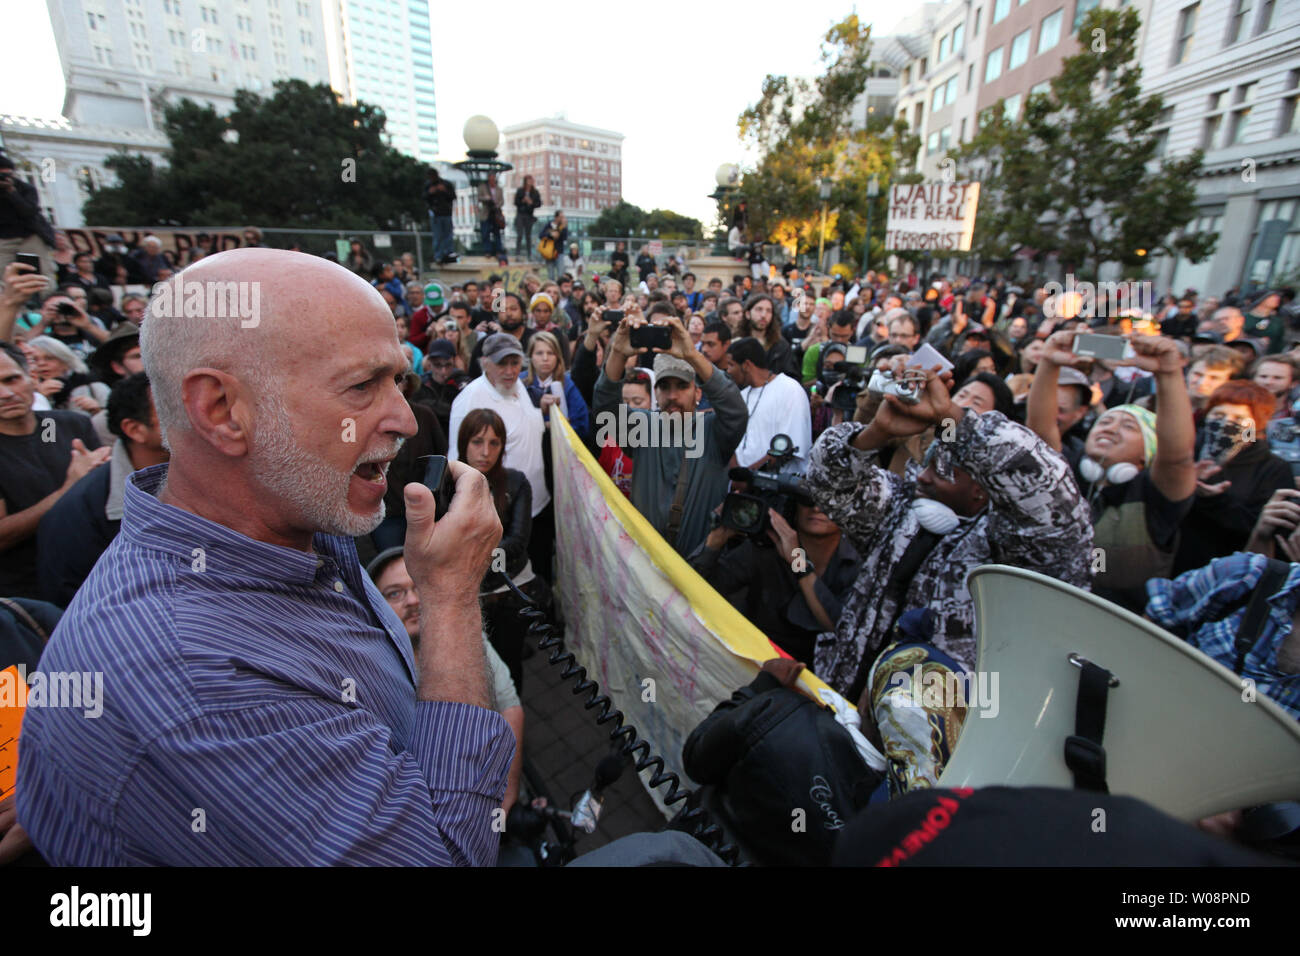 Aktivist Rechtsanwalt Dan Seigel Adressen eine Masse von Oakland Demonstranten besetzen Vor Frank H. Ogawa Plaza in Oakland, Kalifornien am 26. Oktober 2011. Mehr als tausend die Nacht versammelt, nachdem die Polizei Tränengas und Gummigeschosse eingesetzt, um die Demonstranten zu zerstreuen. UPI/Terry Schmitt Stockfoto